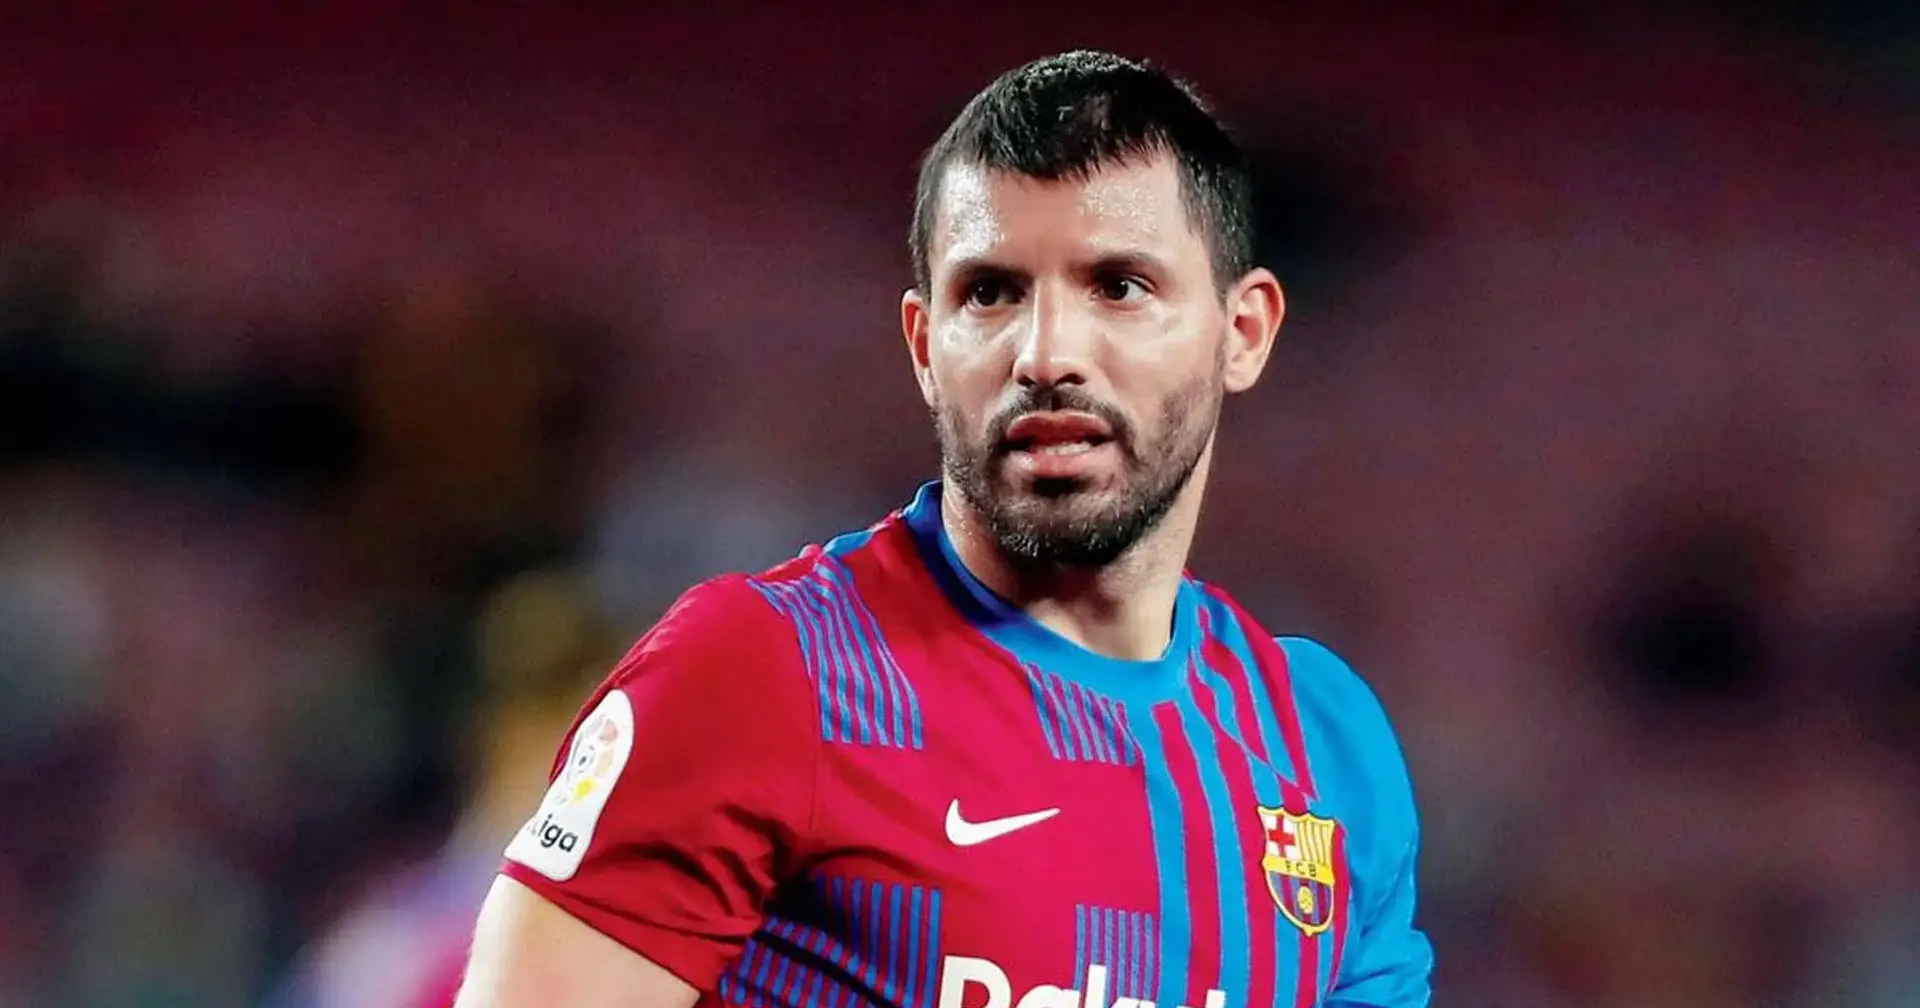 "J'ai déjà commencé à m'entraîner": Aguero jouera pour Barcelone ce mois-ci - mais il y a un hic